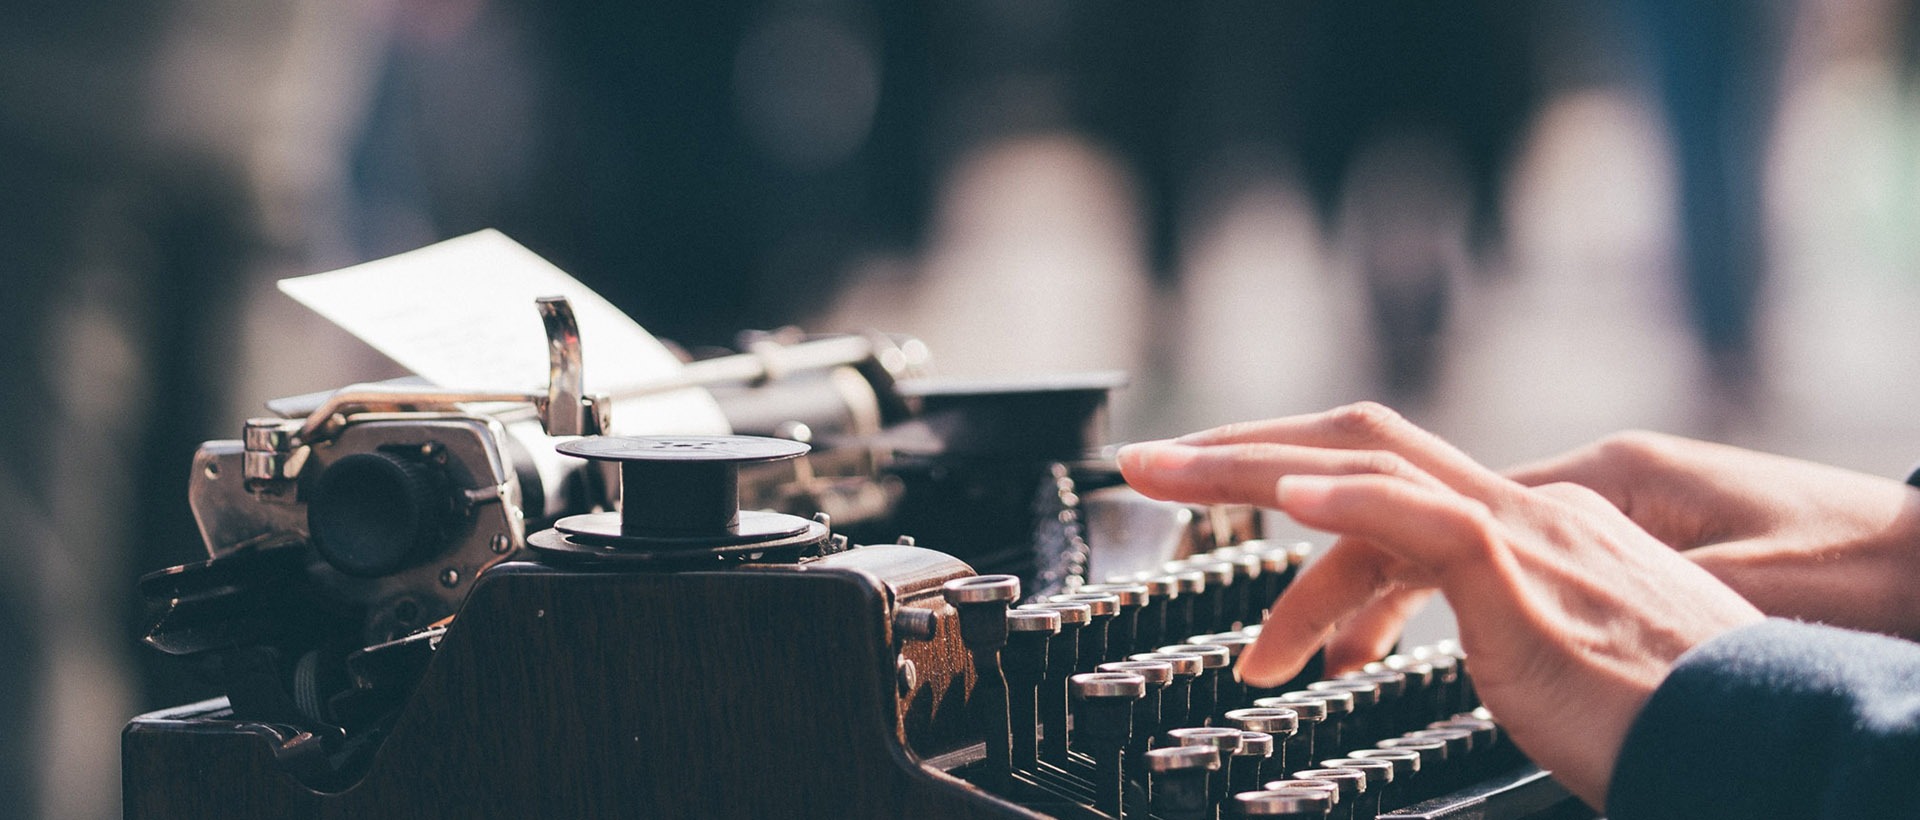 Alte Schreibmaschine, die von einer Person bedient wird, sinnbildlich für das Texten für Websites und Apps